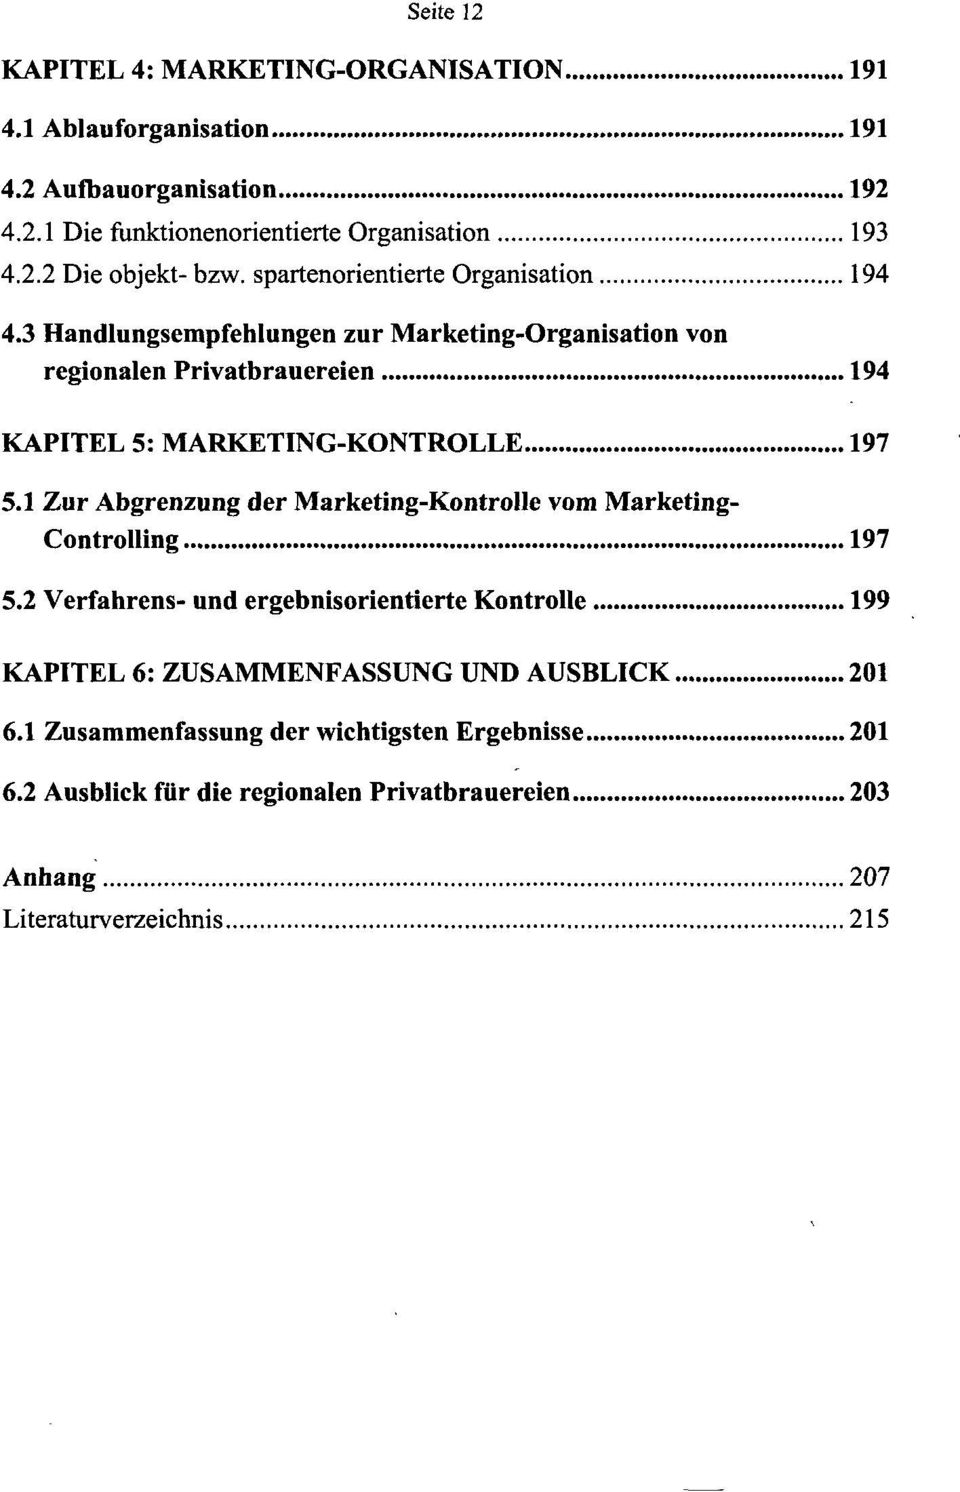 3 Handlungsempfehlungen zur Marketing-Organisation von regionalen Privatbrauereien 194 KAPITEL 5: MARKETING-KONTROLLE 197 5.